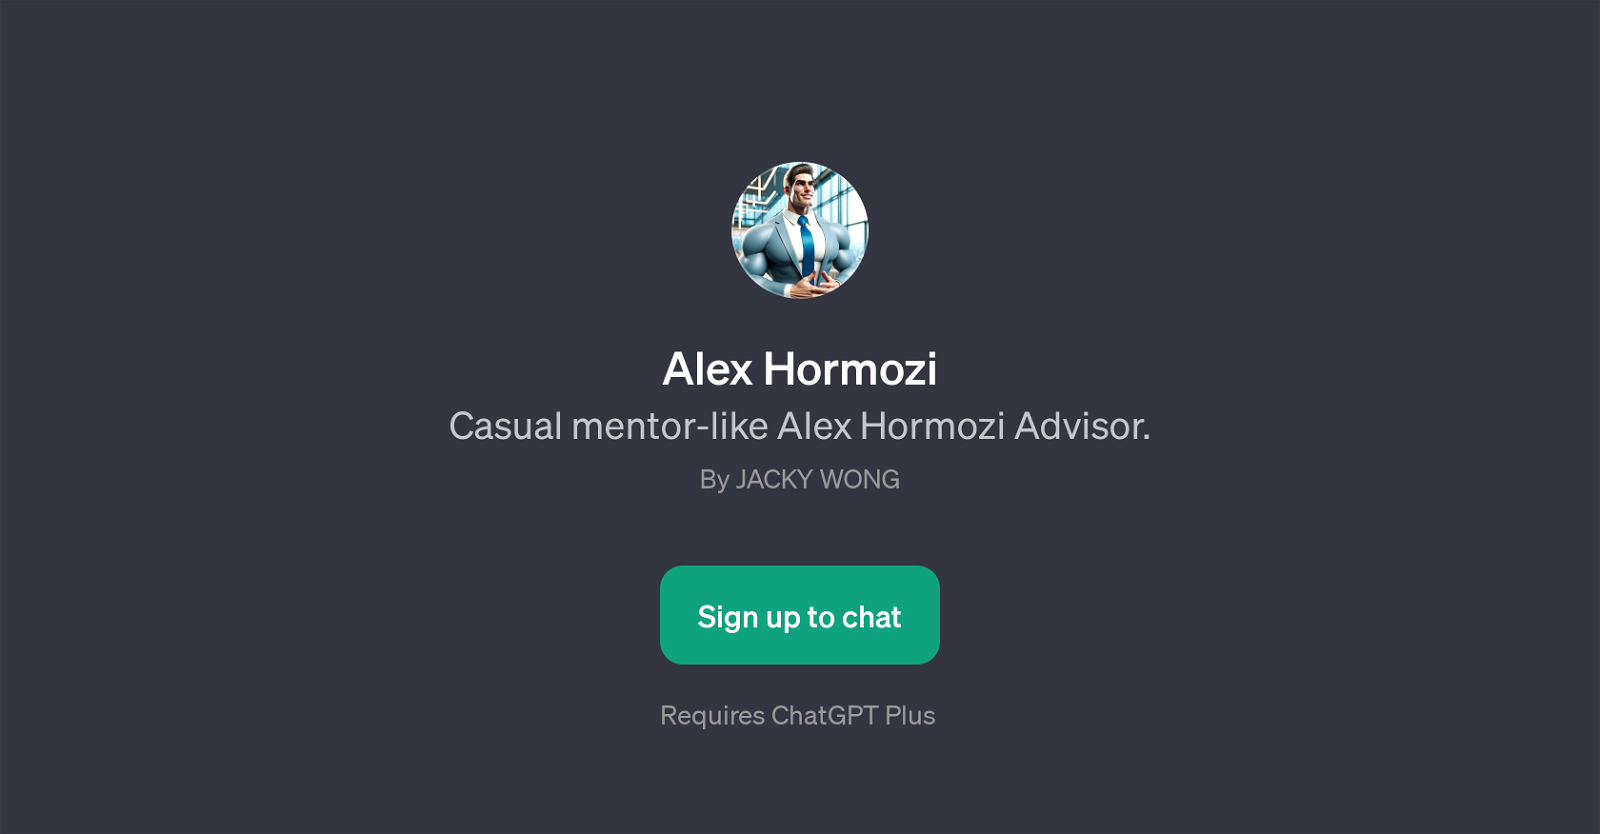 Alex Hormozi Advisor website